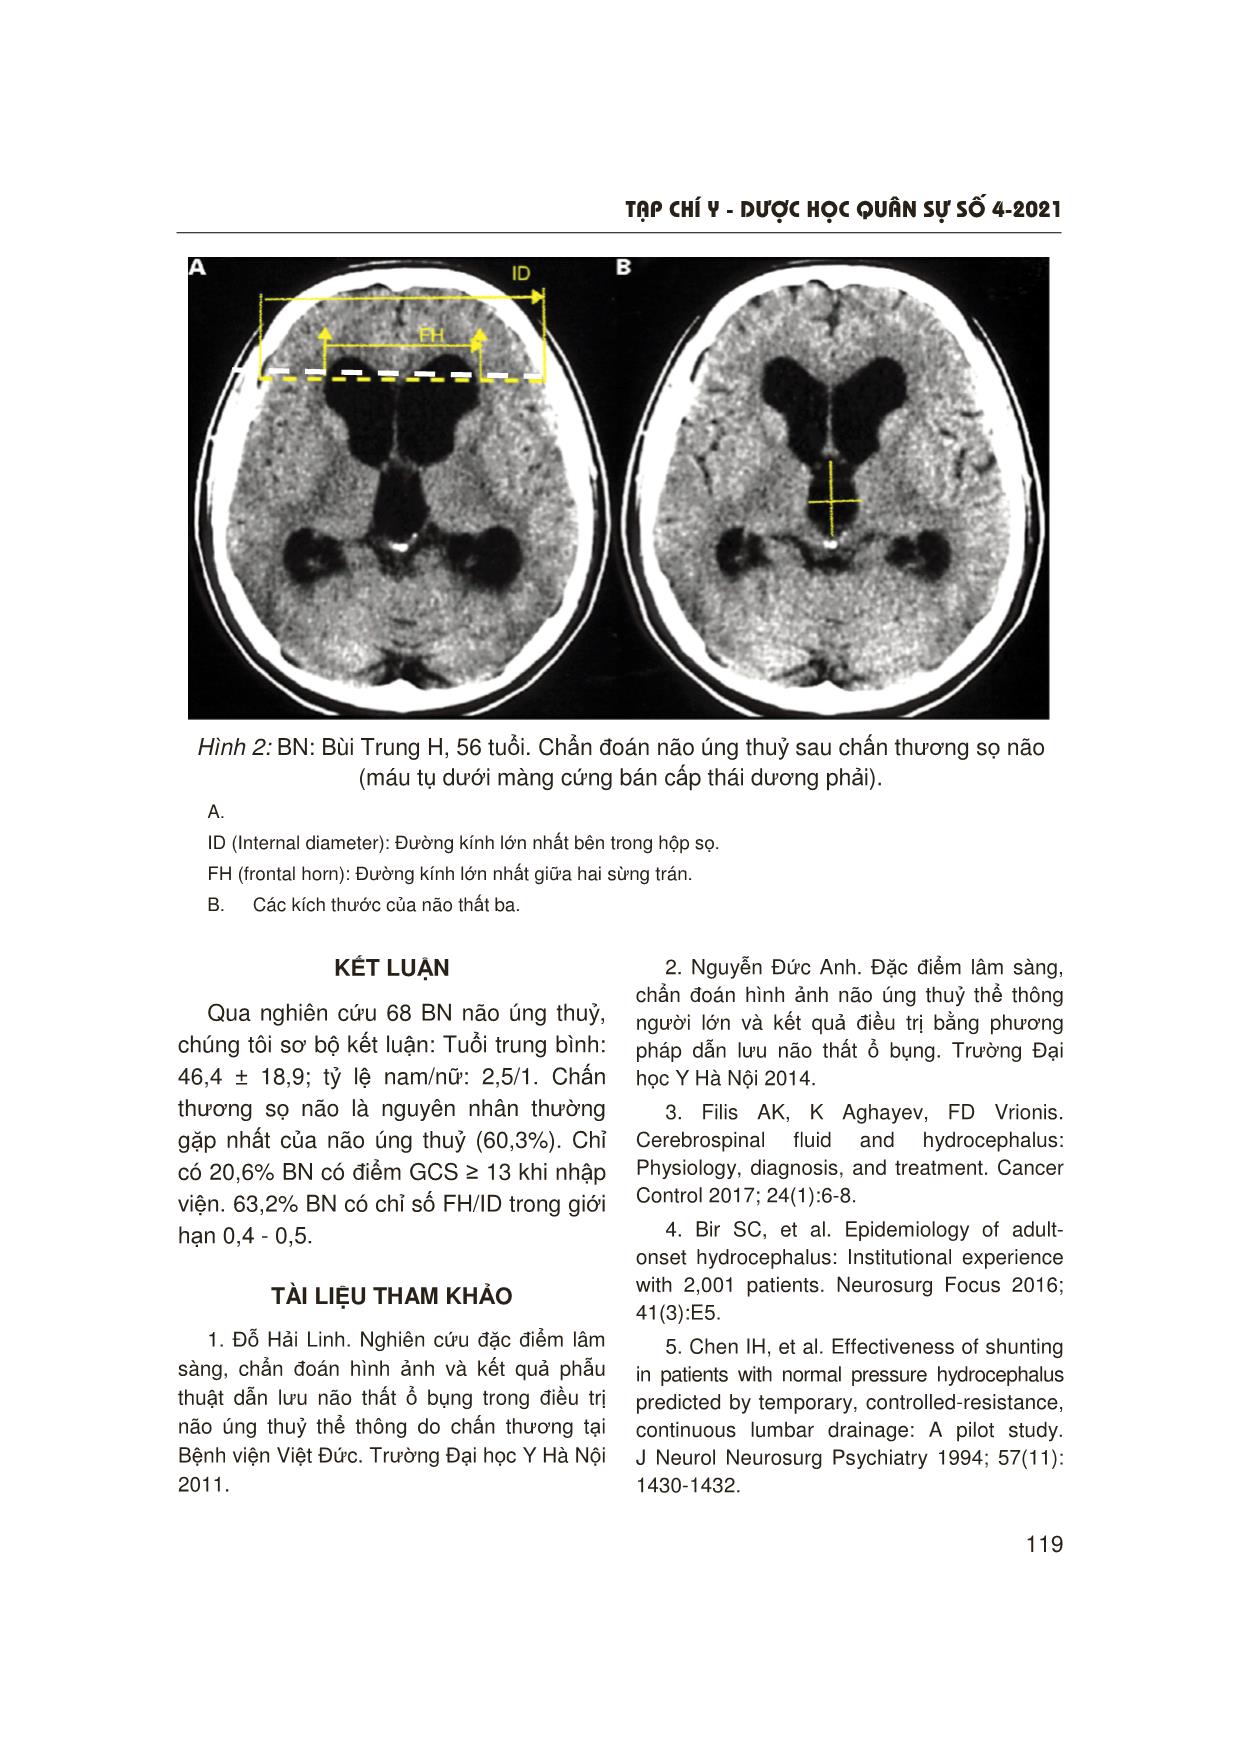 Nghiên cứu đặc điểm dịch tễ, nguyên nhân, triệu chứng lâm sàng và chẩn đoán hình ảnh não úng thuỷ ở người lớn trang 6